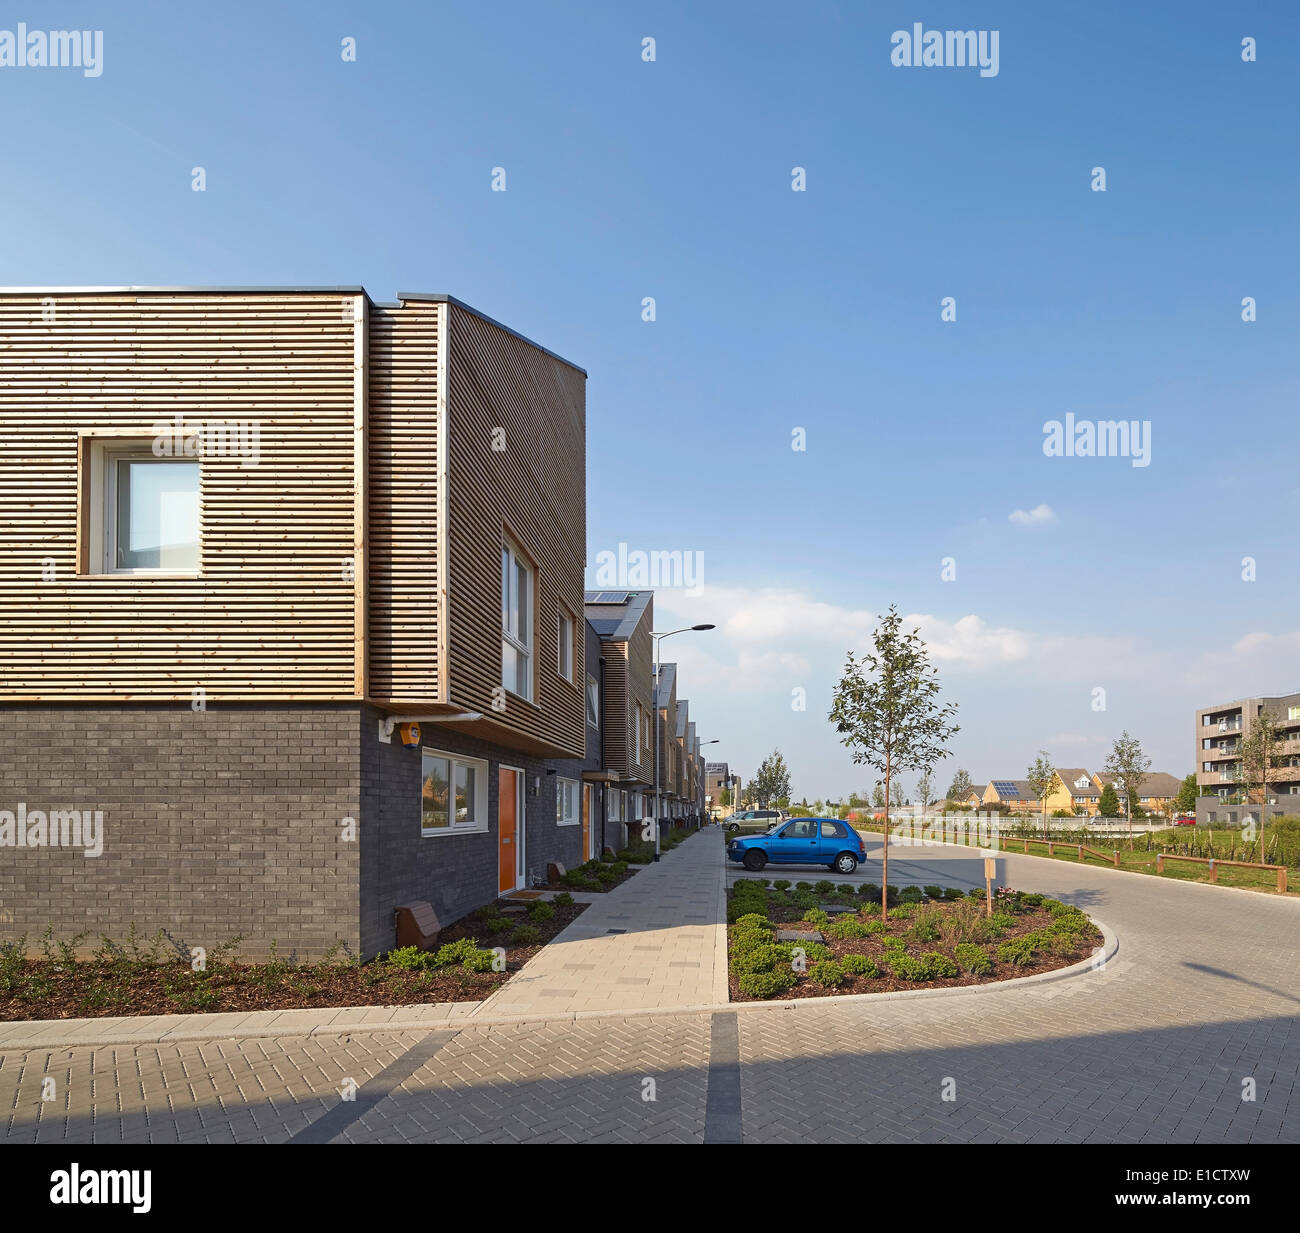 Bellen am Flussufer Wohnsiedlung, bellen, Vereinigtes Königreich. Architekt: Sheppard Robson, 2014. Gehäuse-Terrasse mit Straße in Stockfoto